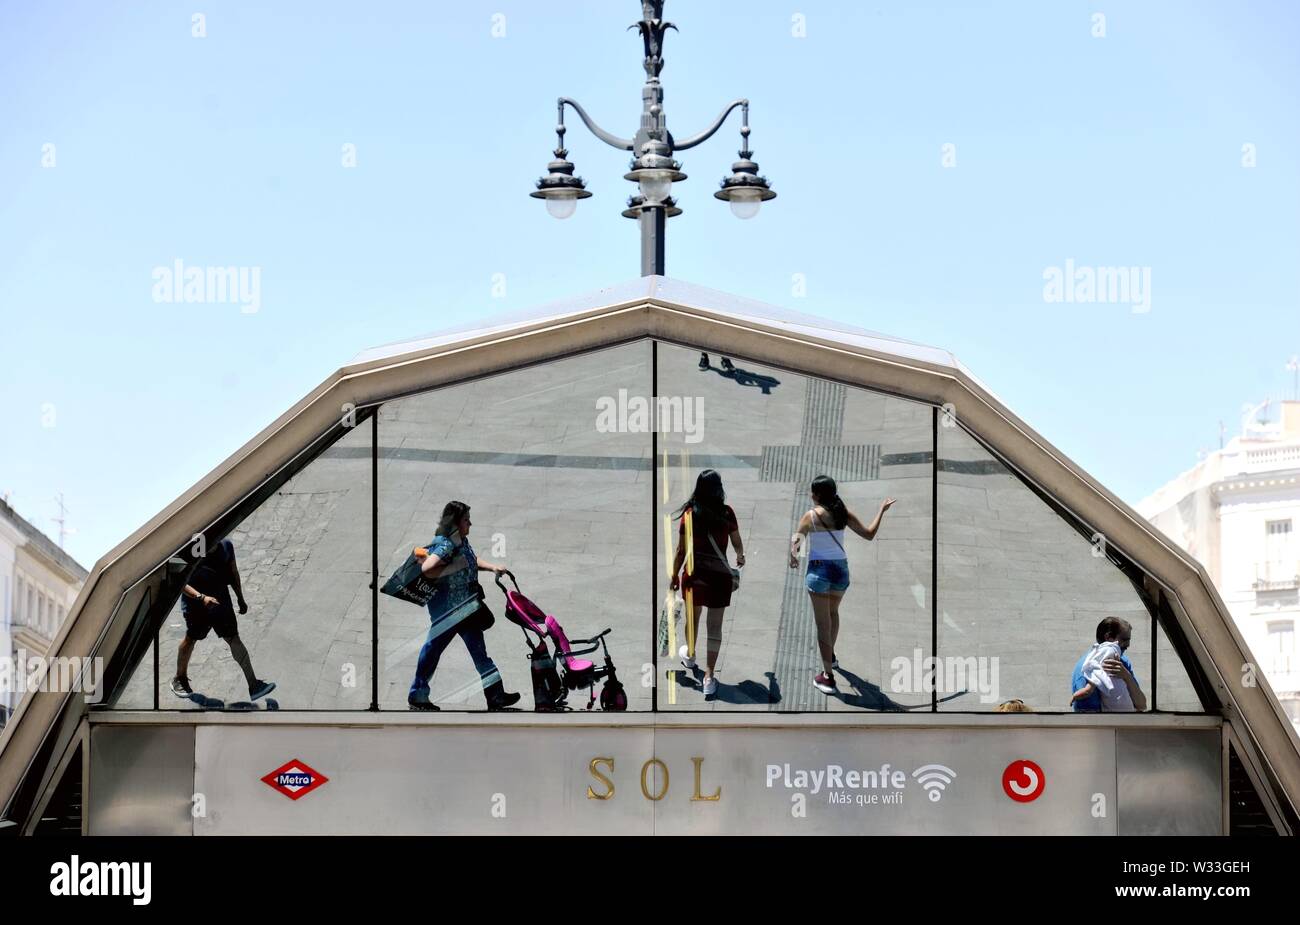 Peking, Spanien. 11. Juli, 2019. Menschen, vorbei an der Metrostation Sol in Madrid, Spanien, 11. Juli 2019. Madrid sah eine Temperatur von über 35 Grad Celsius in den letzten Tagen. Quelle: Guo Qiuda/Xinhua/Alamy leben Nachrichten Stockfoto